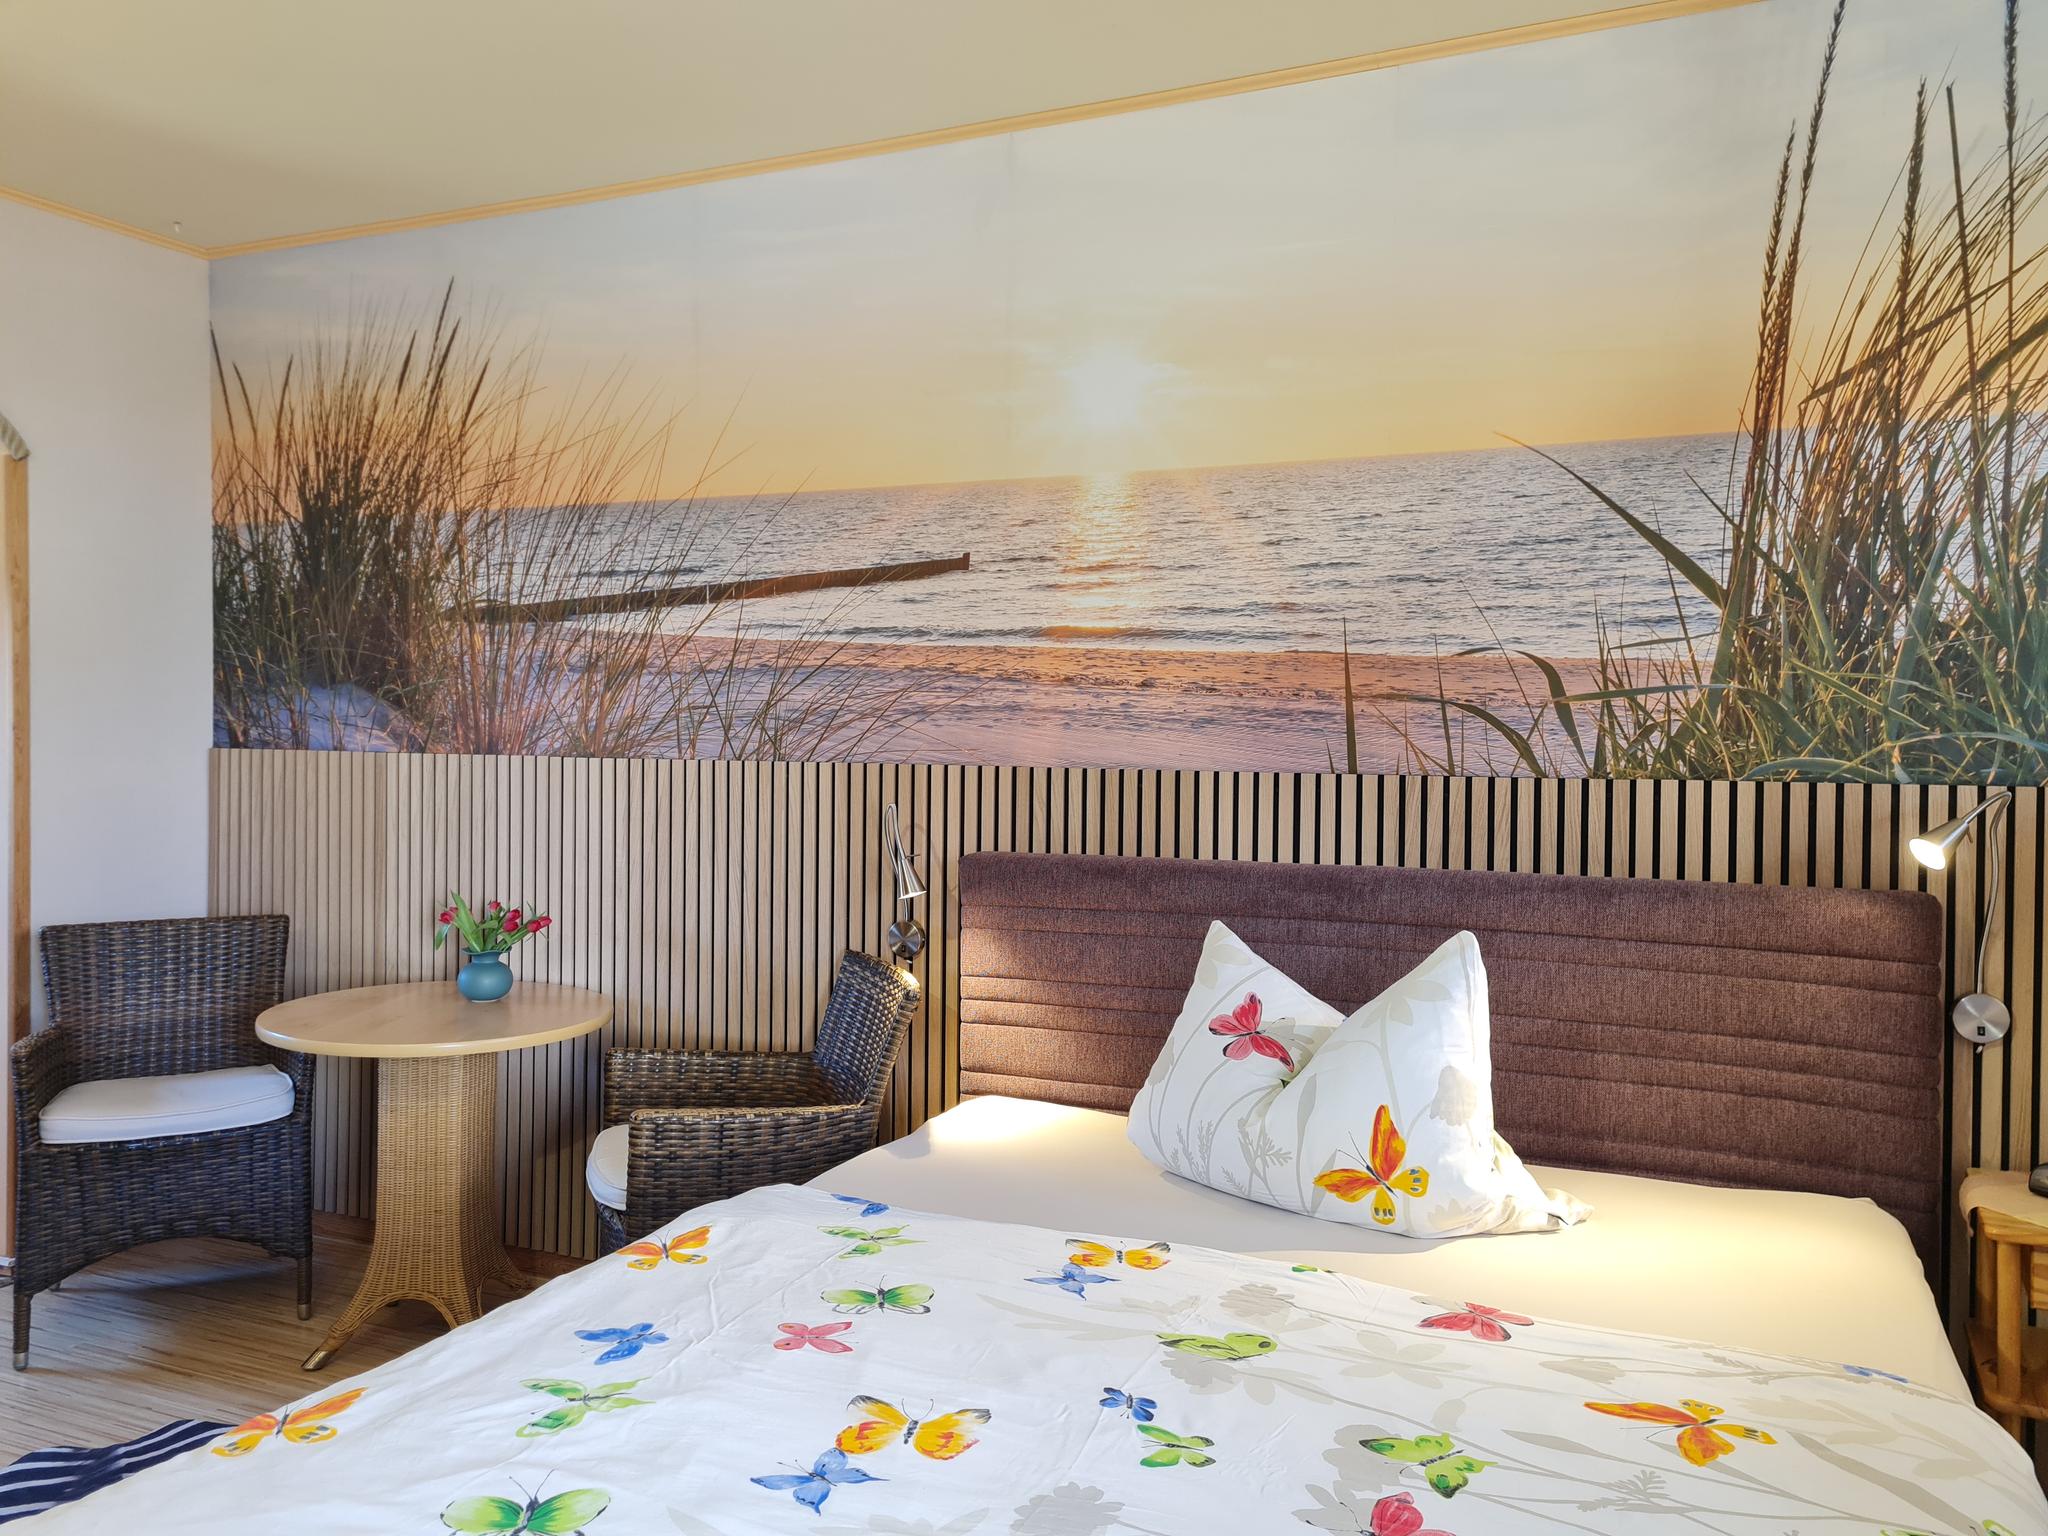 Schlafzimmmer mit Strand-Fototapete